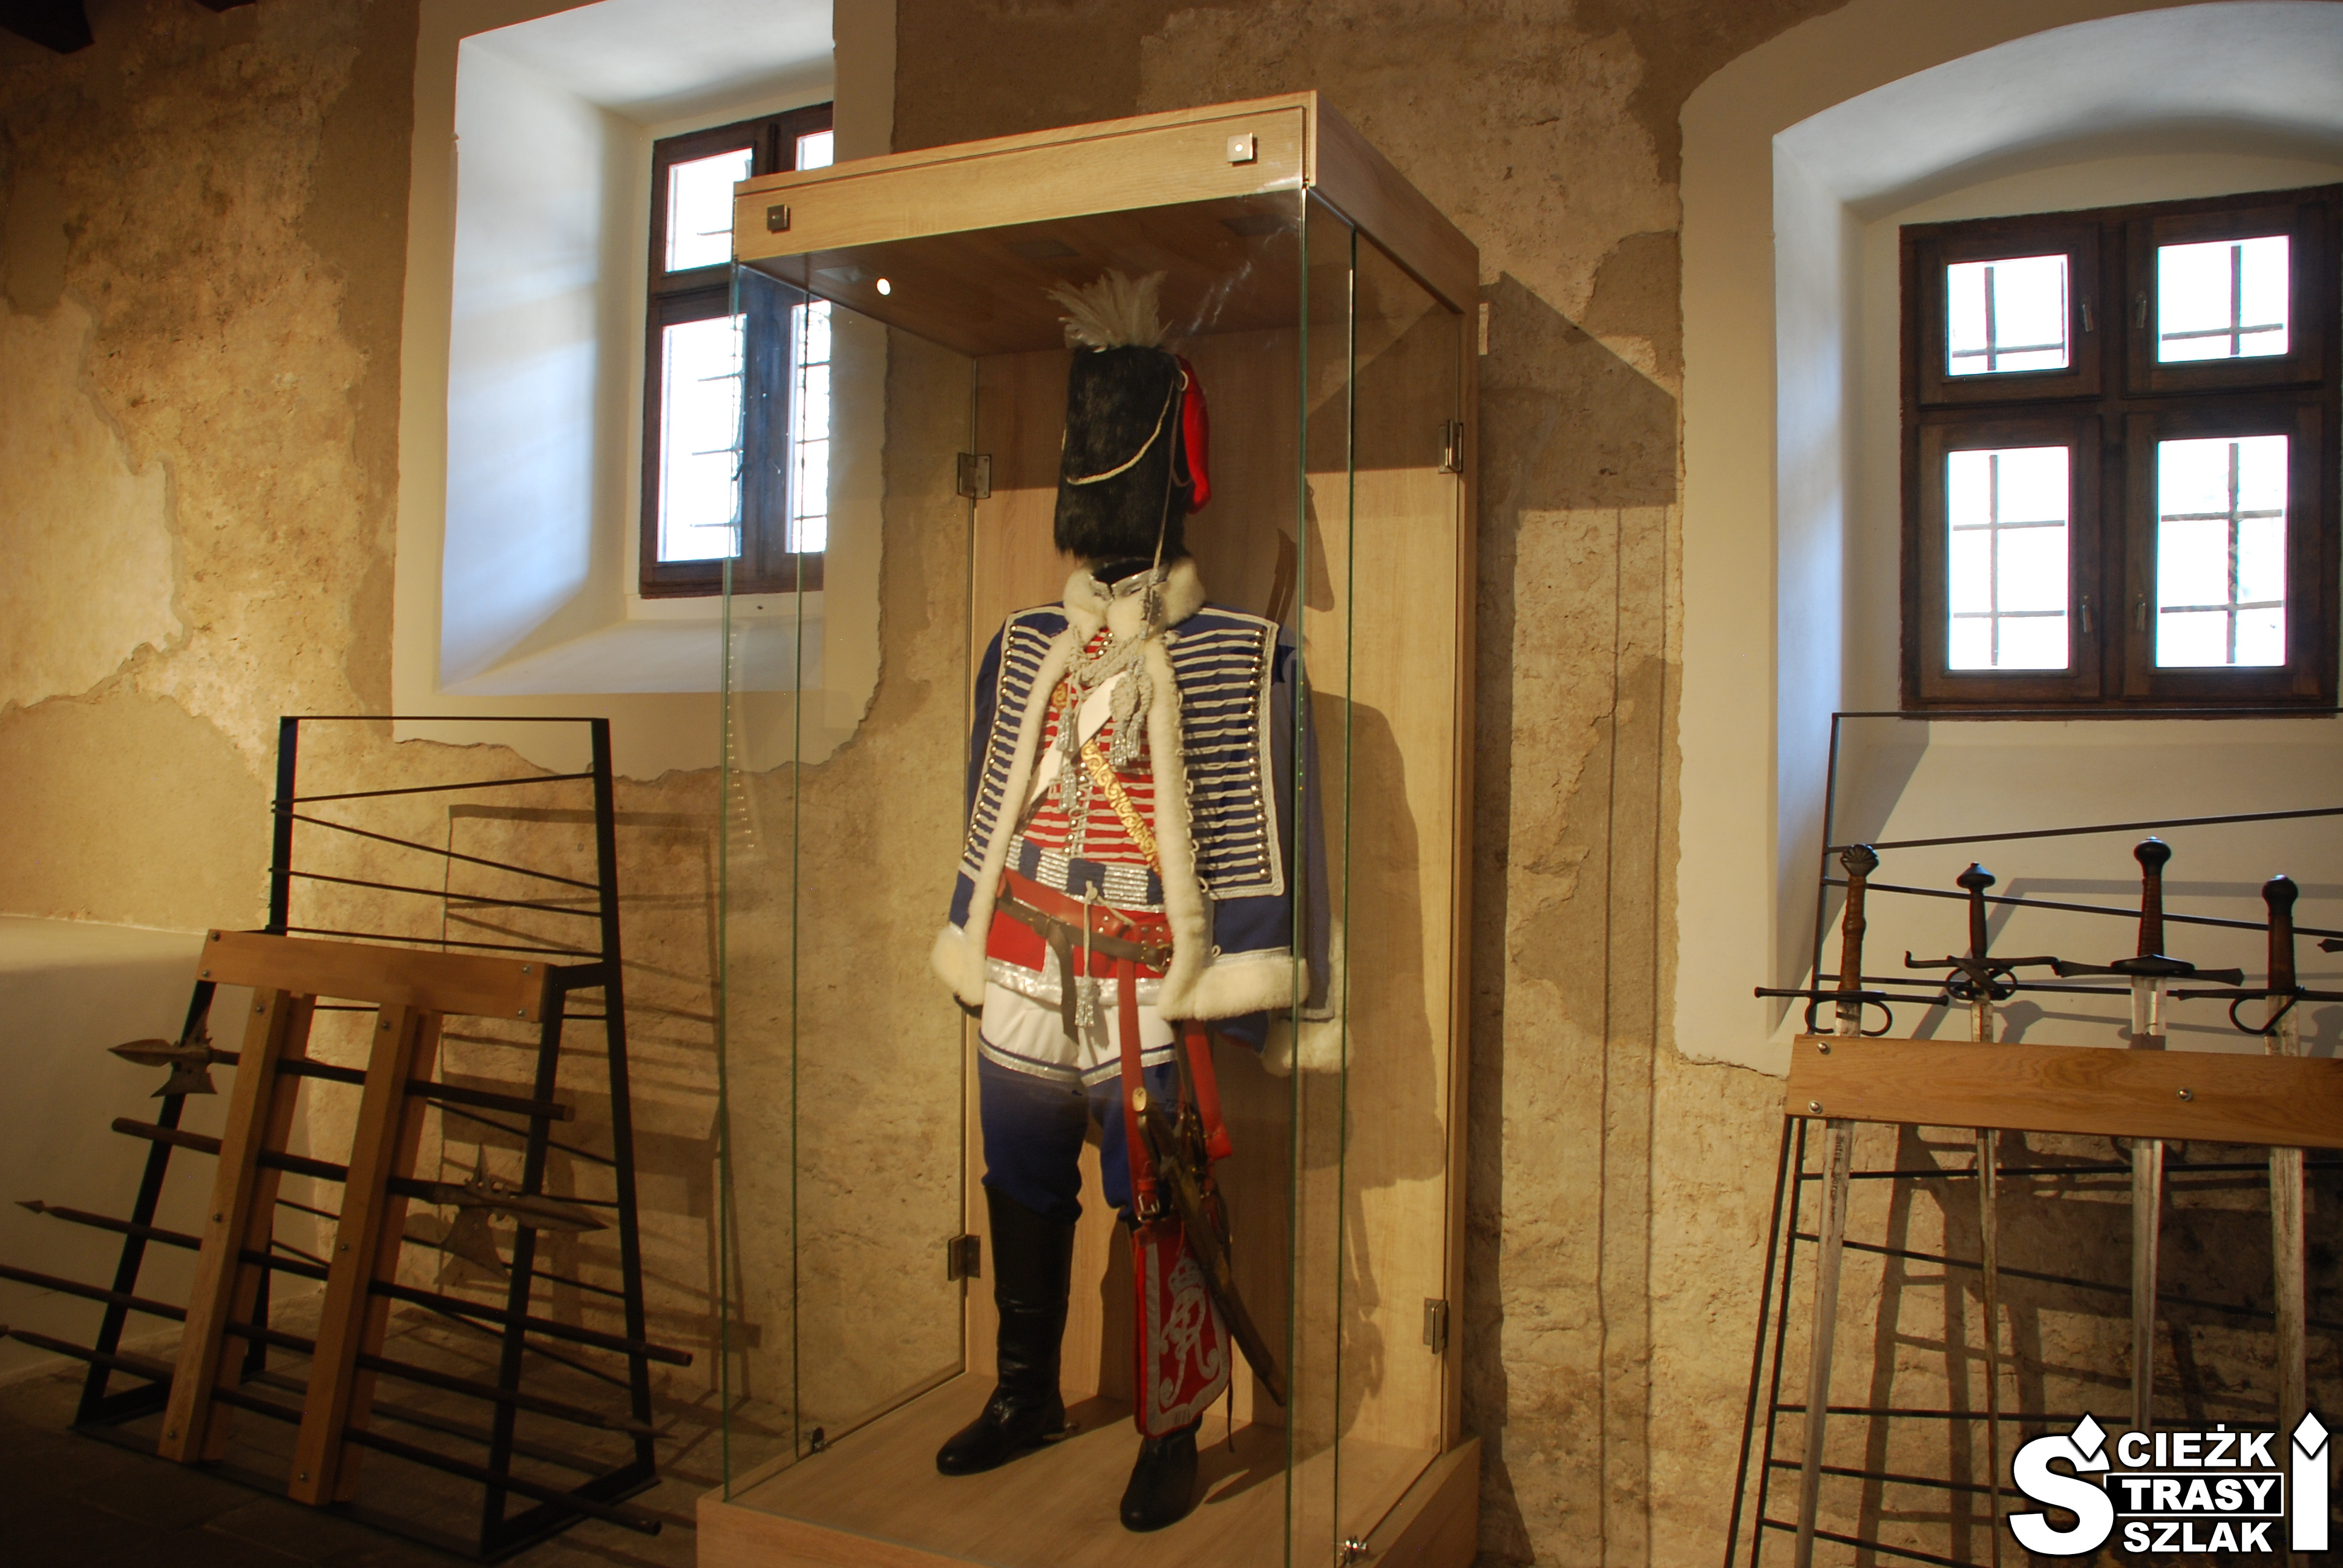 Lekka zbroja husarii wyeksponowana w najstarszym Muzeum na Słowacji - Zamku Orawskim